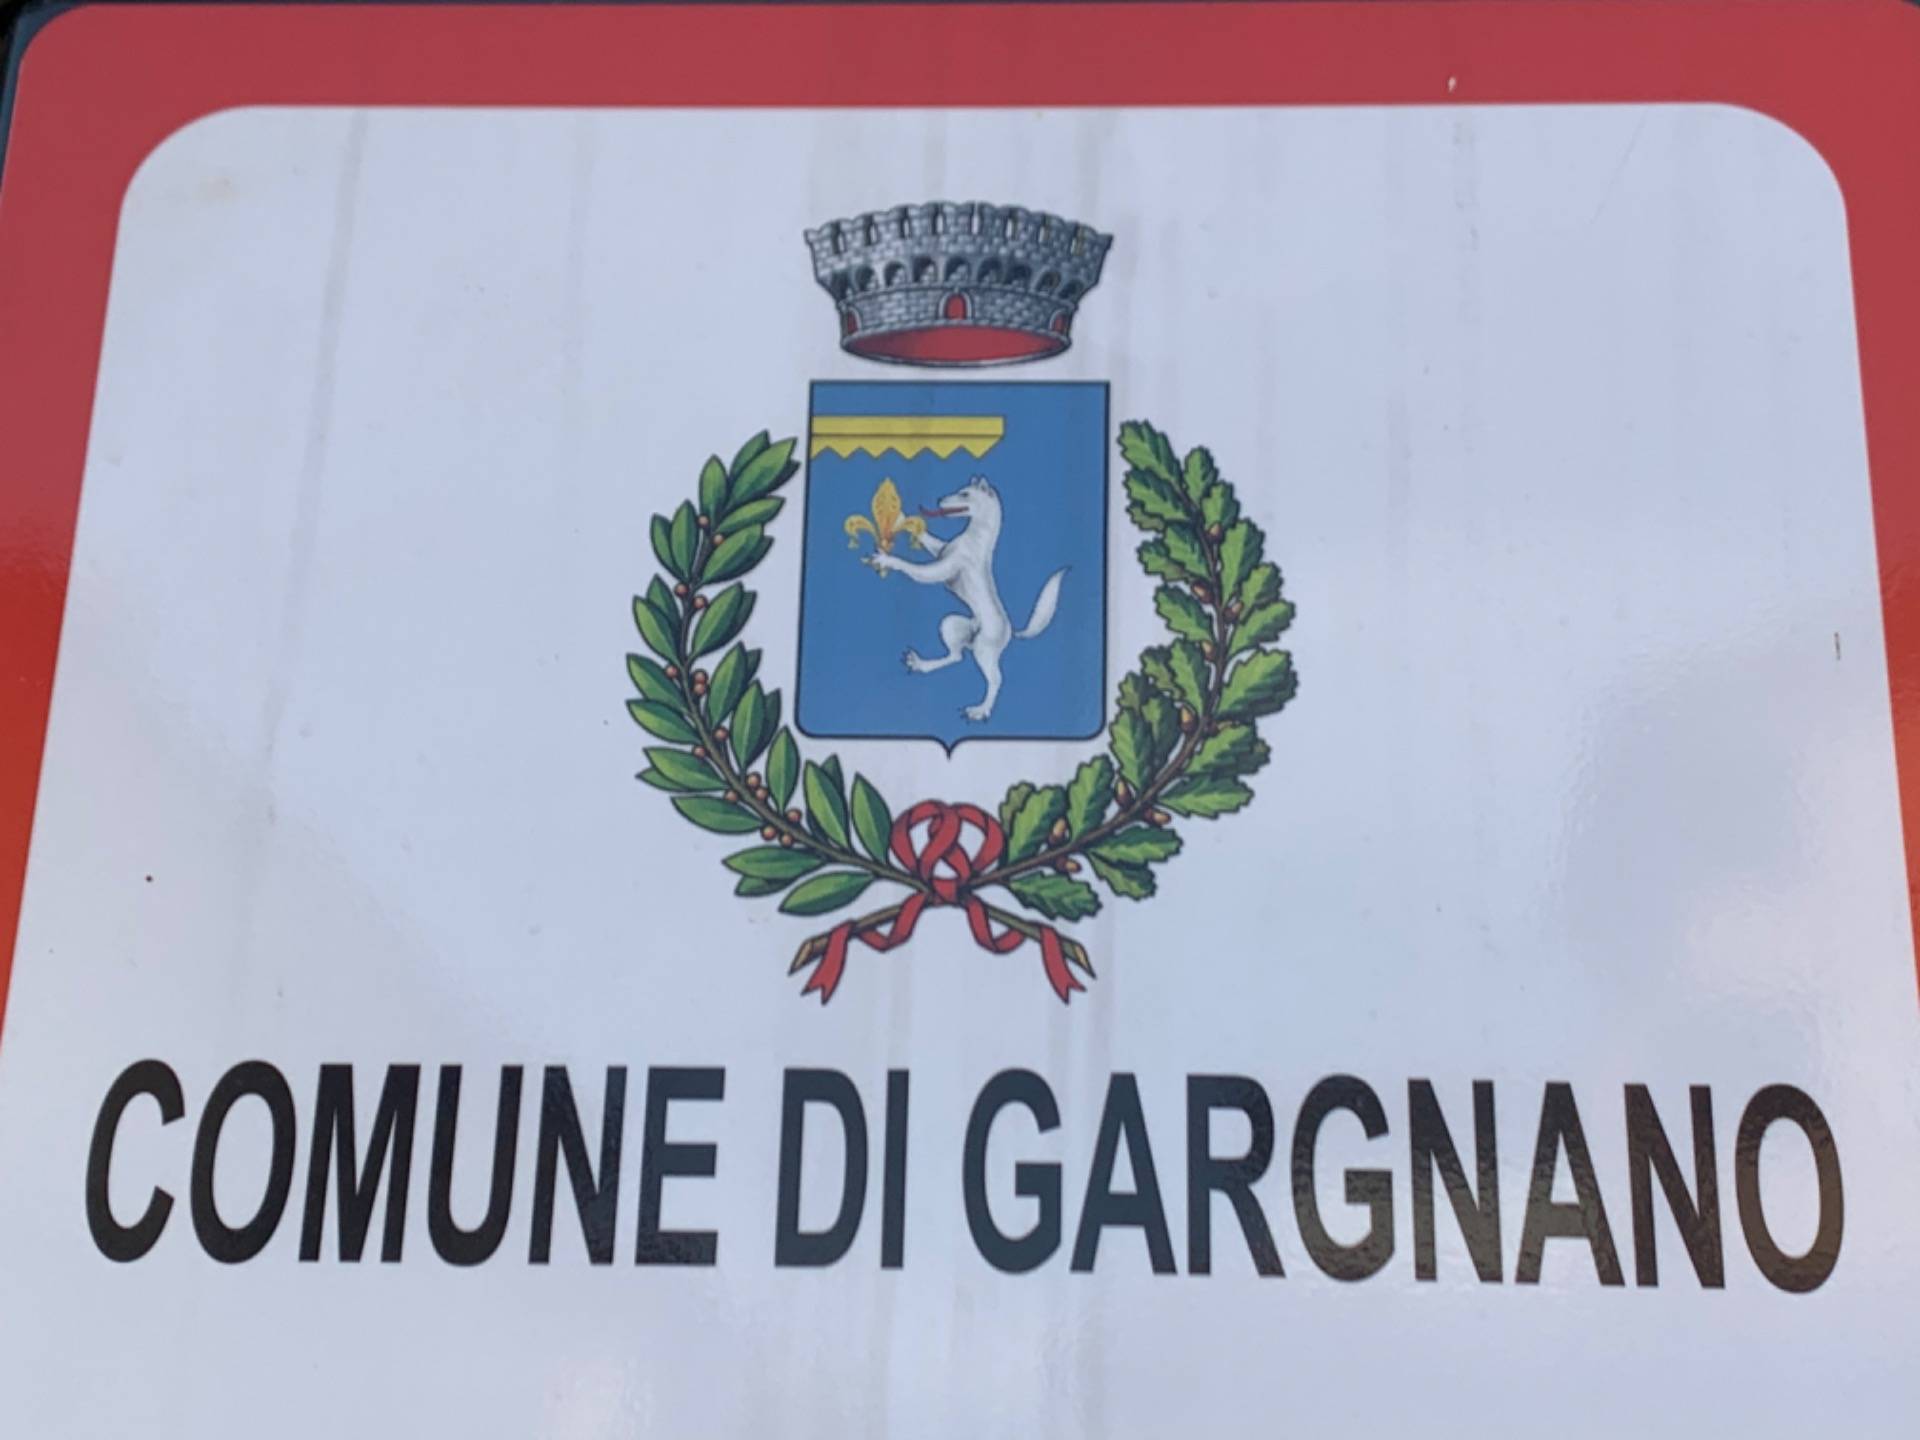 Comune di Gargnano, Italy